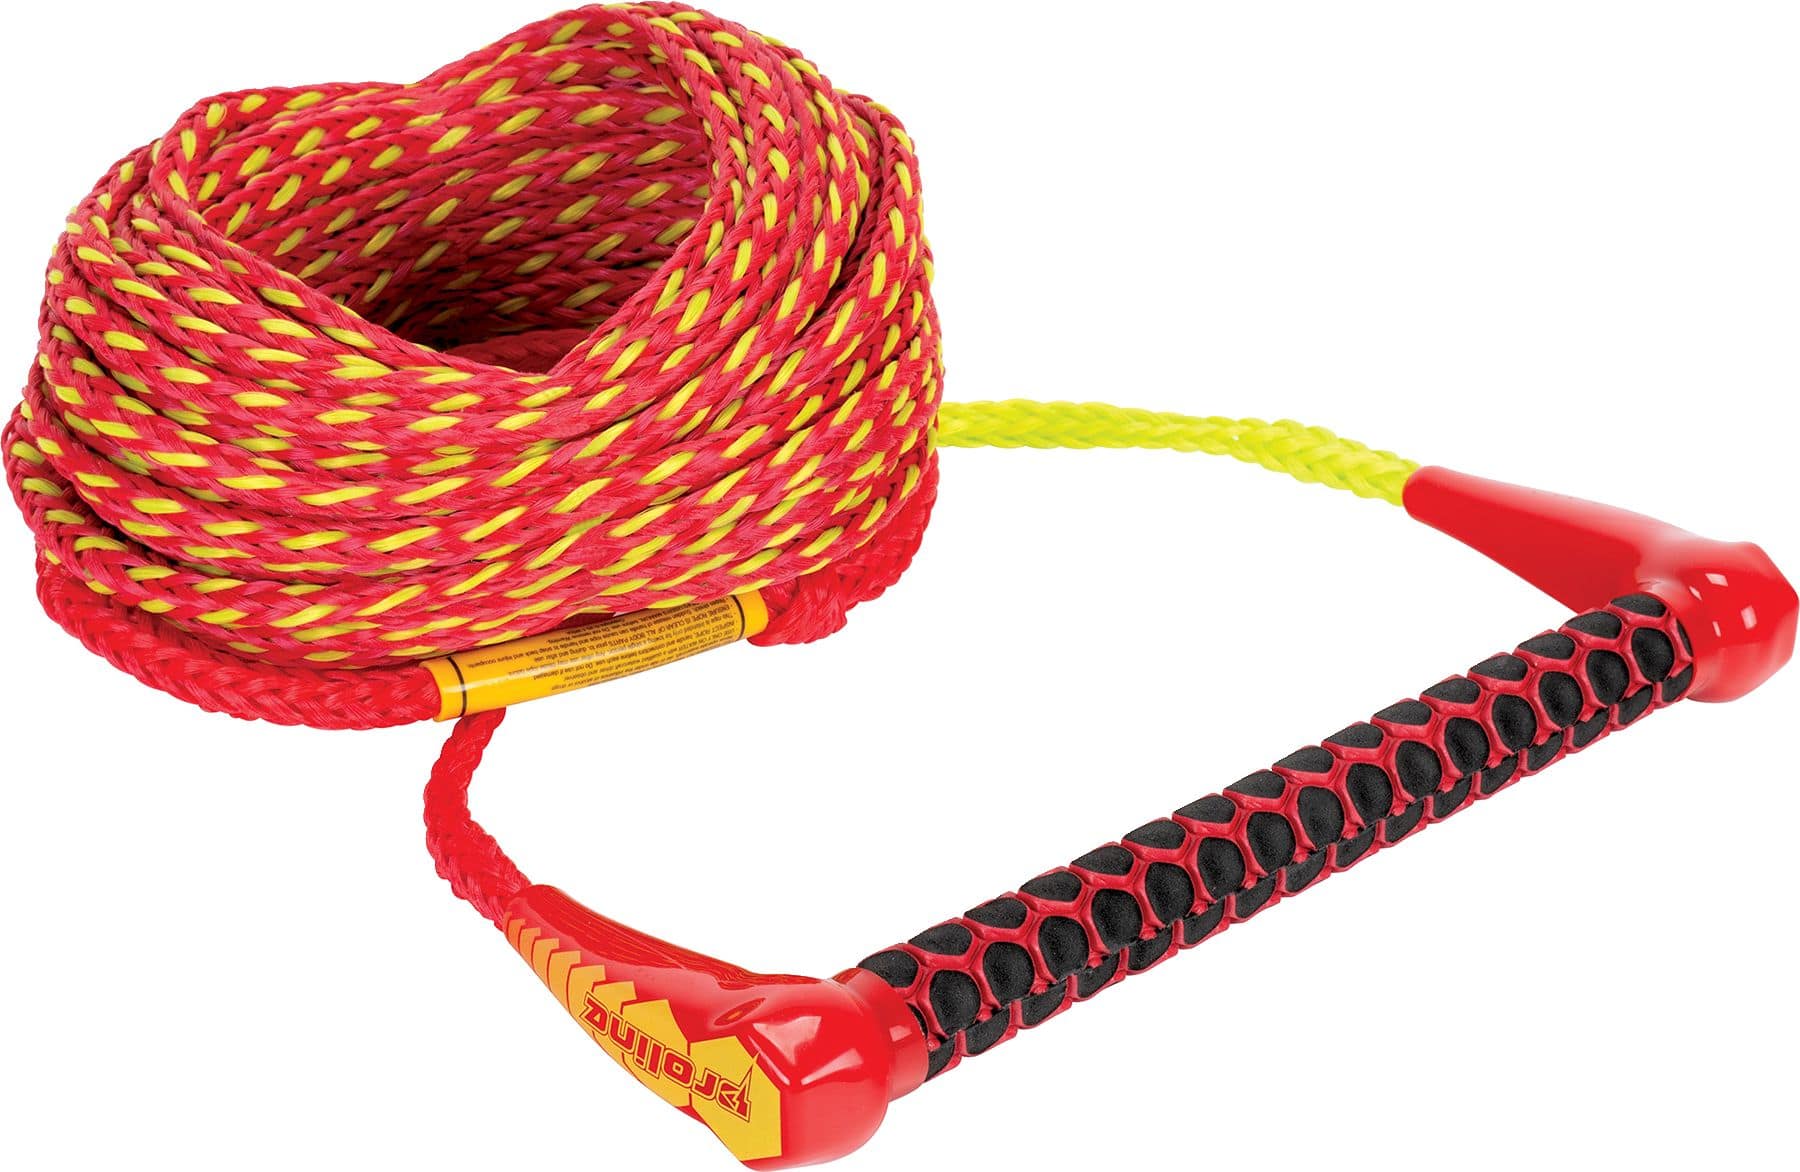 Corde à ski nautique robuste universelle Connelly Proline, rouge